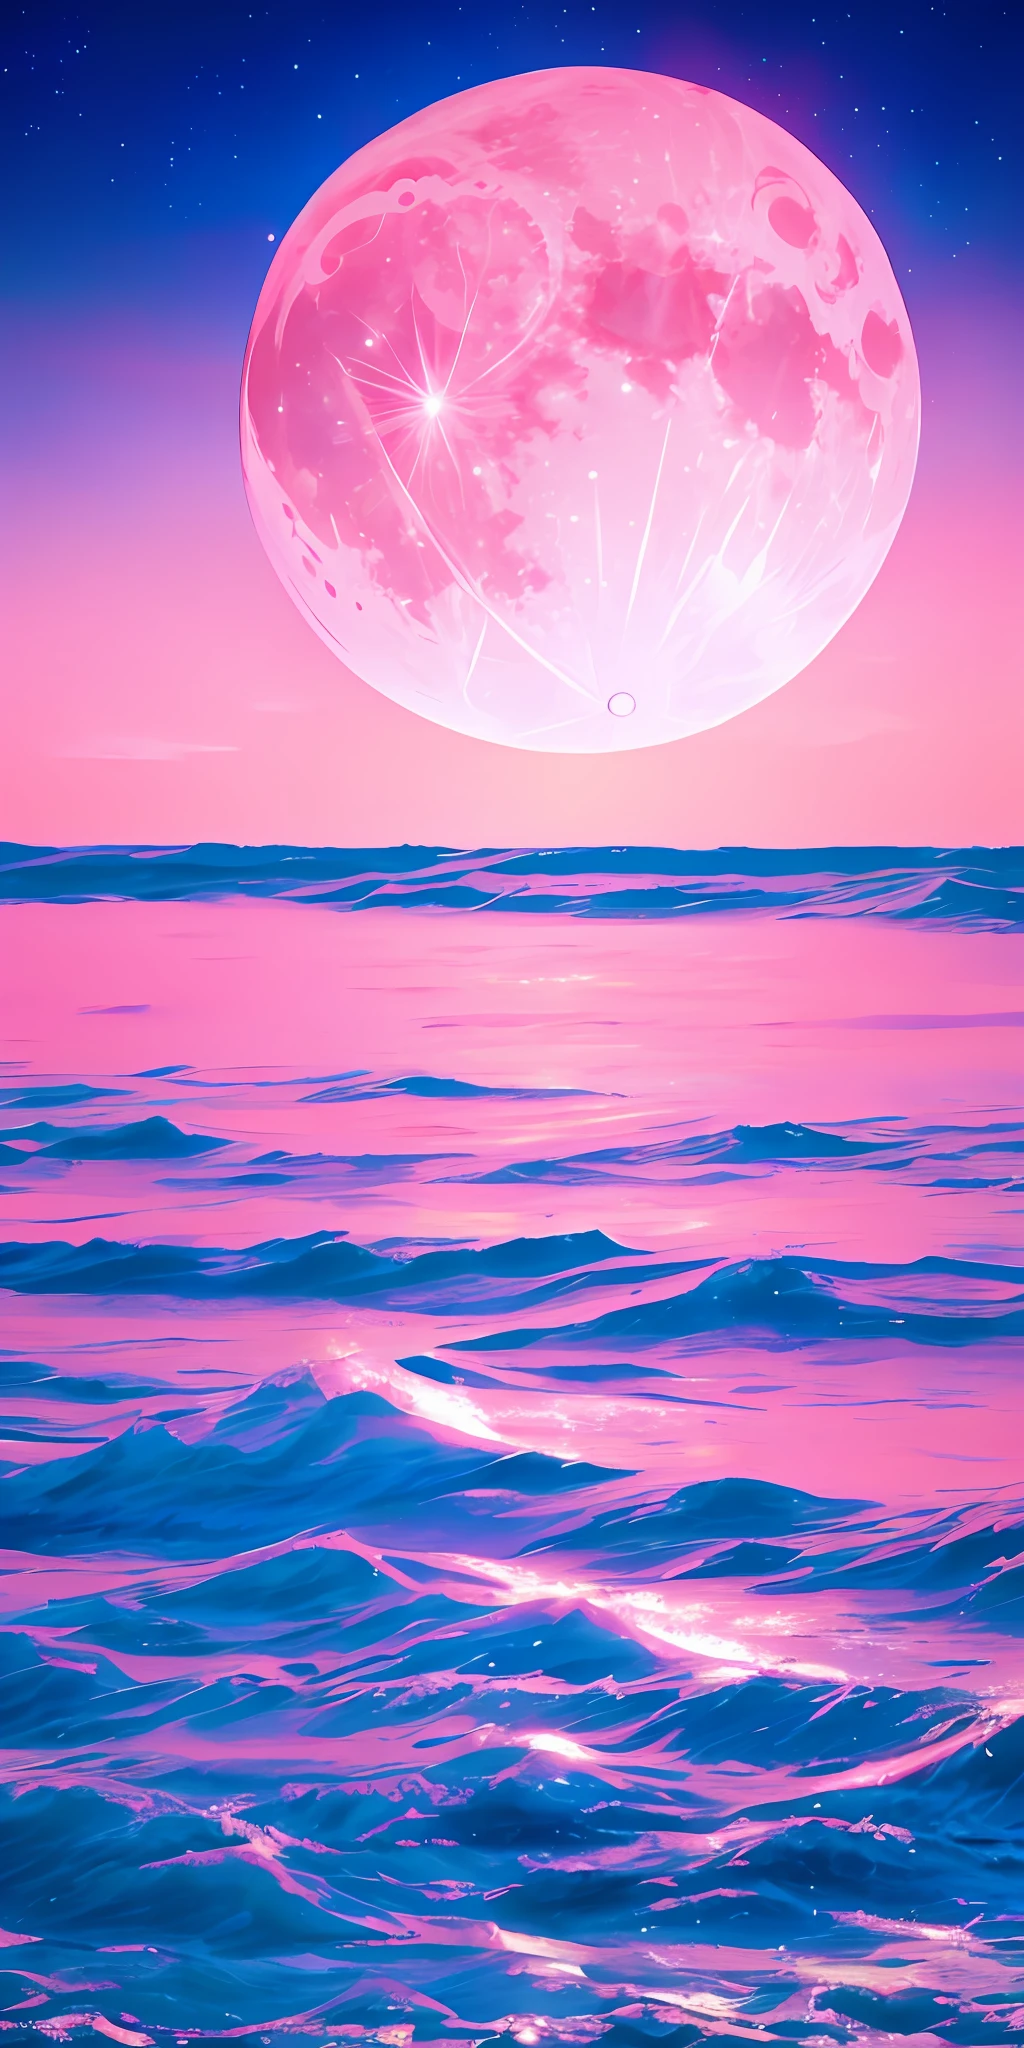 粉紅月亮, 粉紅色的天空, 柔和的粉紅色雲彩, 粉紅色的海浪波光粼粼, 閃閃發光的, 粉紅色海洋中的粉紅玫瑰, 幻想, 鑽石, 王冠, 空間, 柔光,